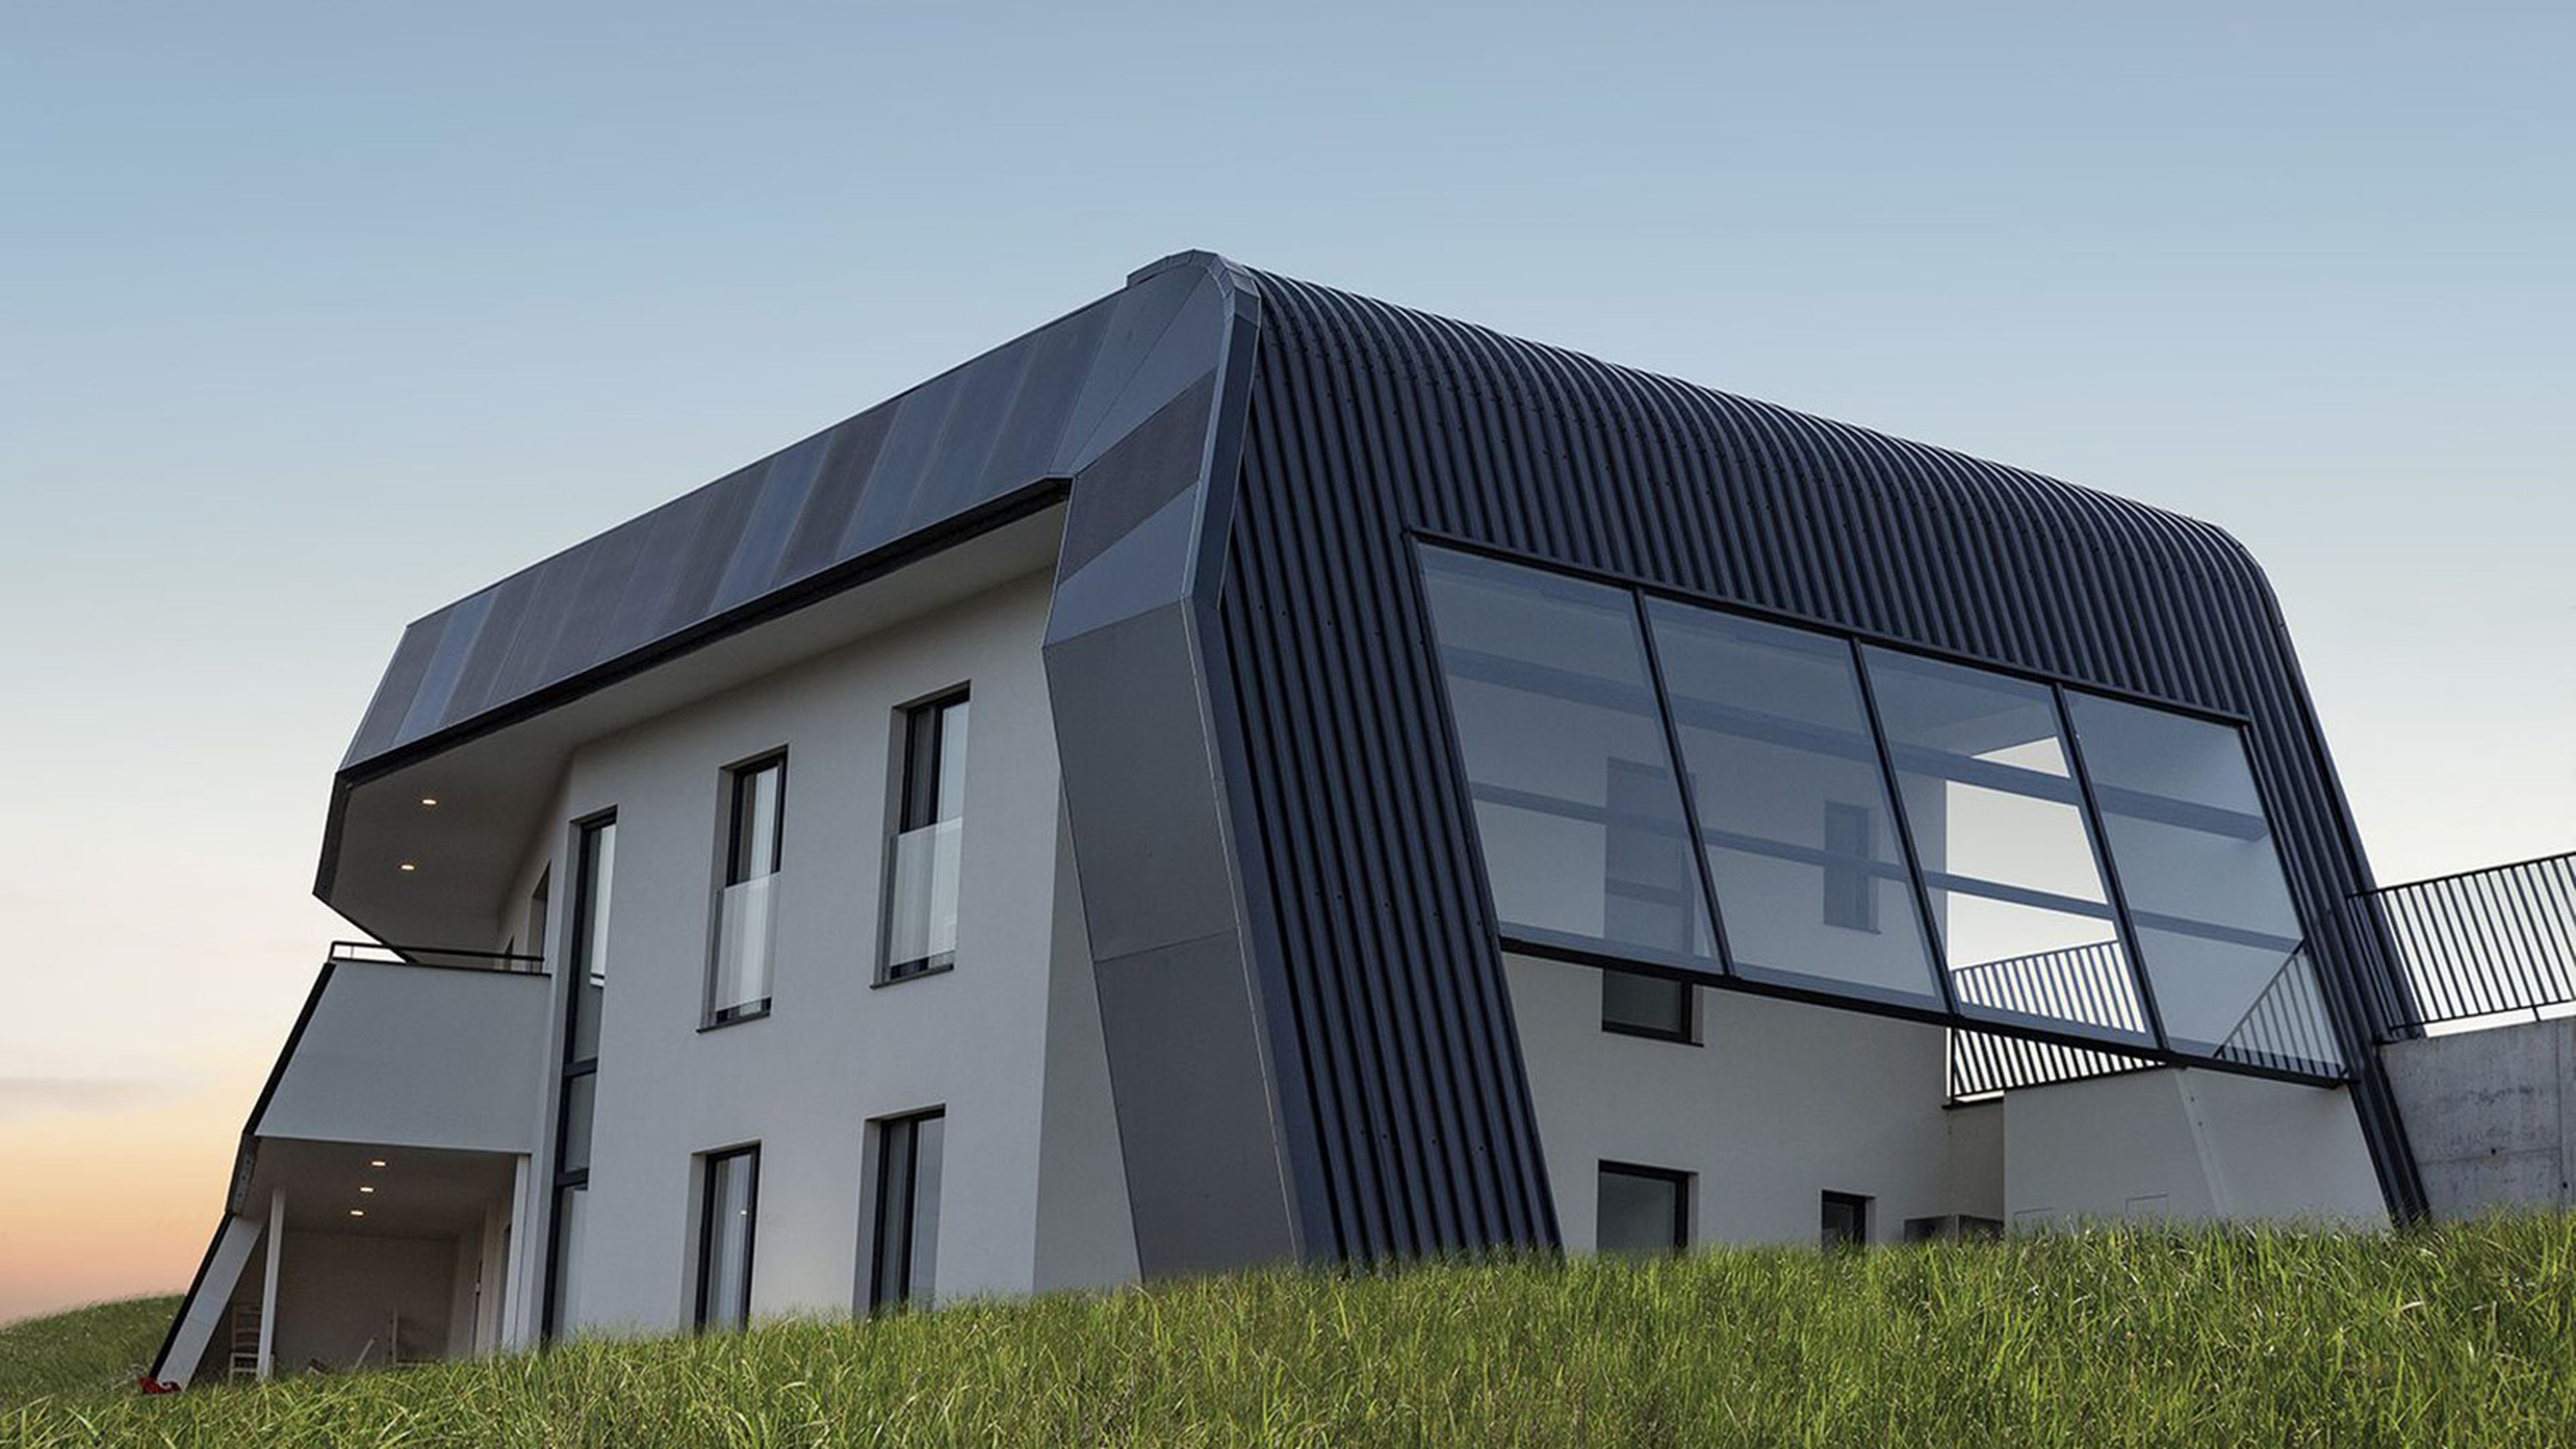 Casa 100% desconectada que genera cero emisiones y es capaz de captar luz solar en días nublados